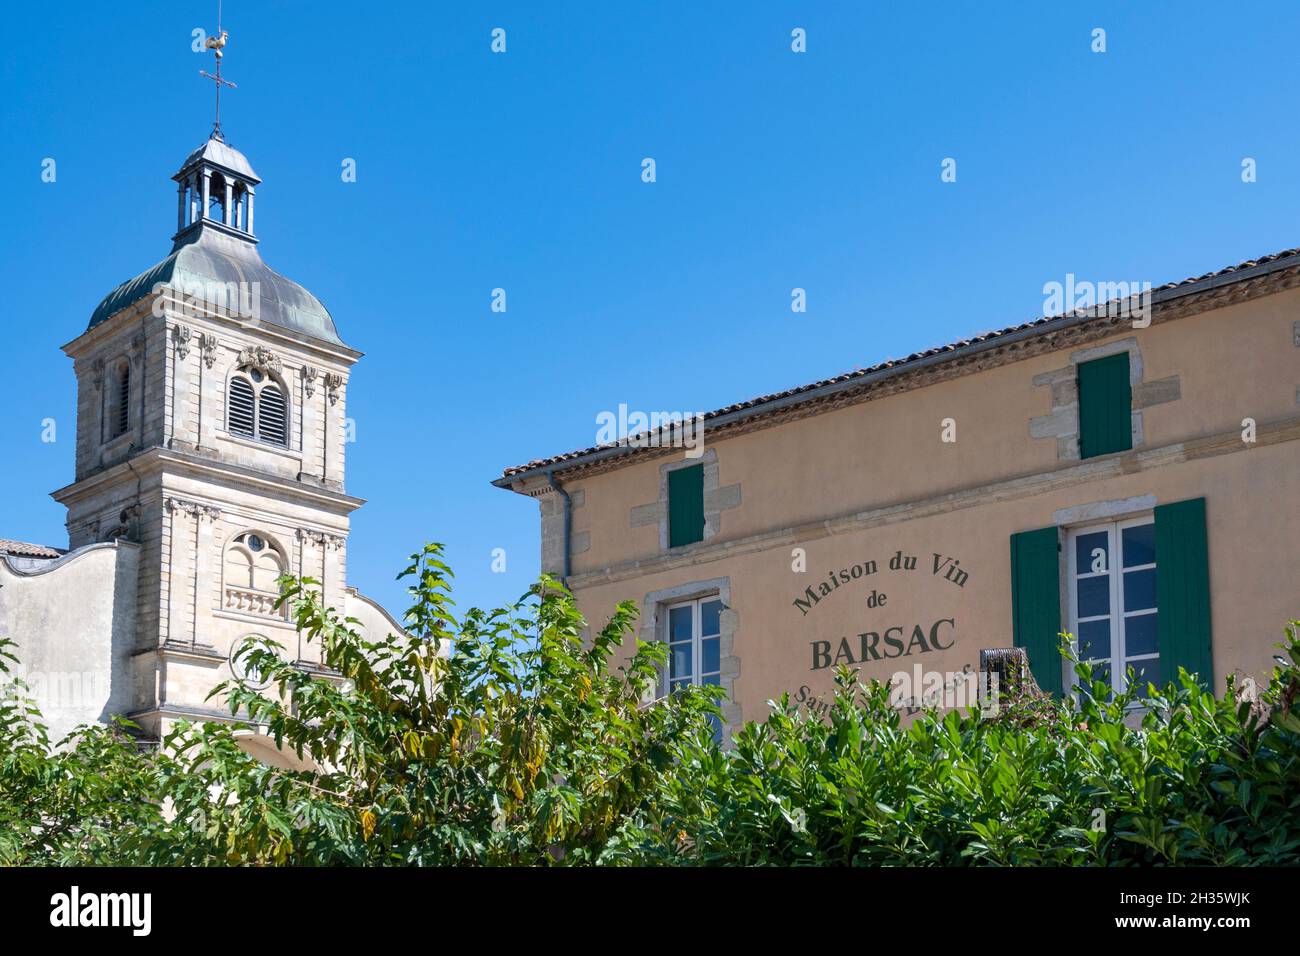 La maison du vin de Barsac et l'église paroissiale de Barsac, Banque D'Images